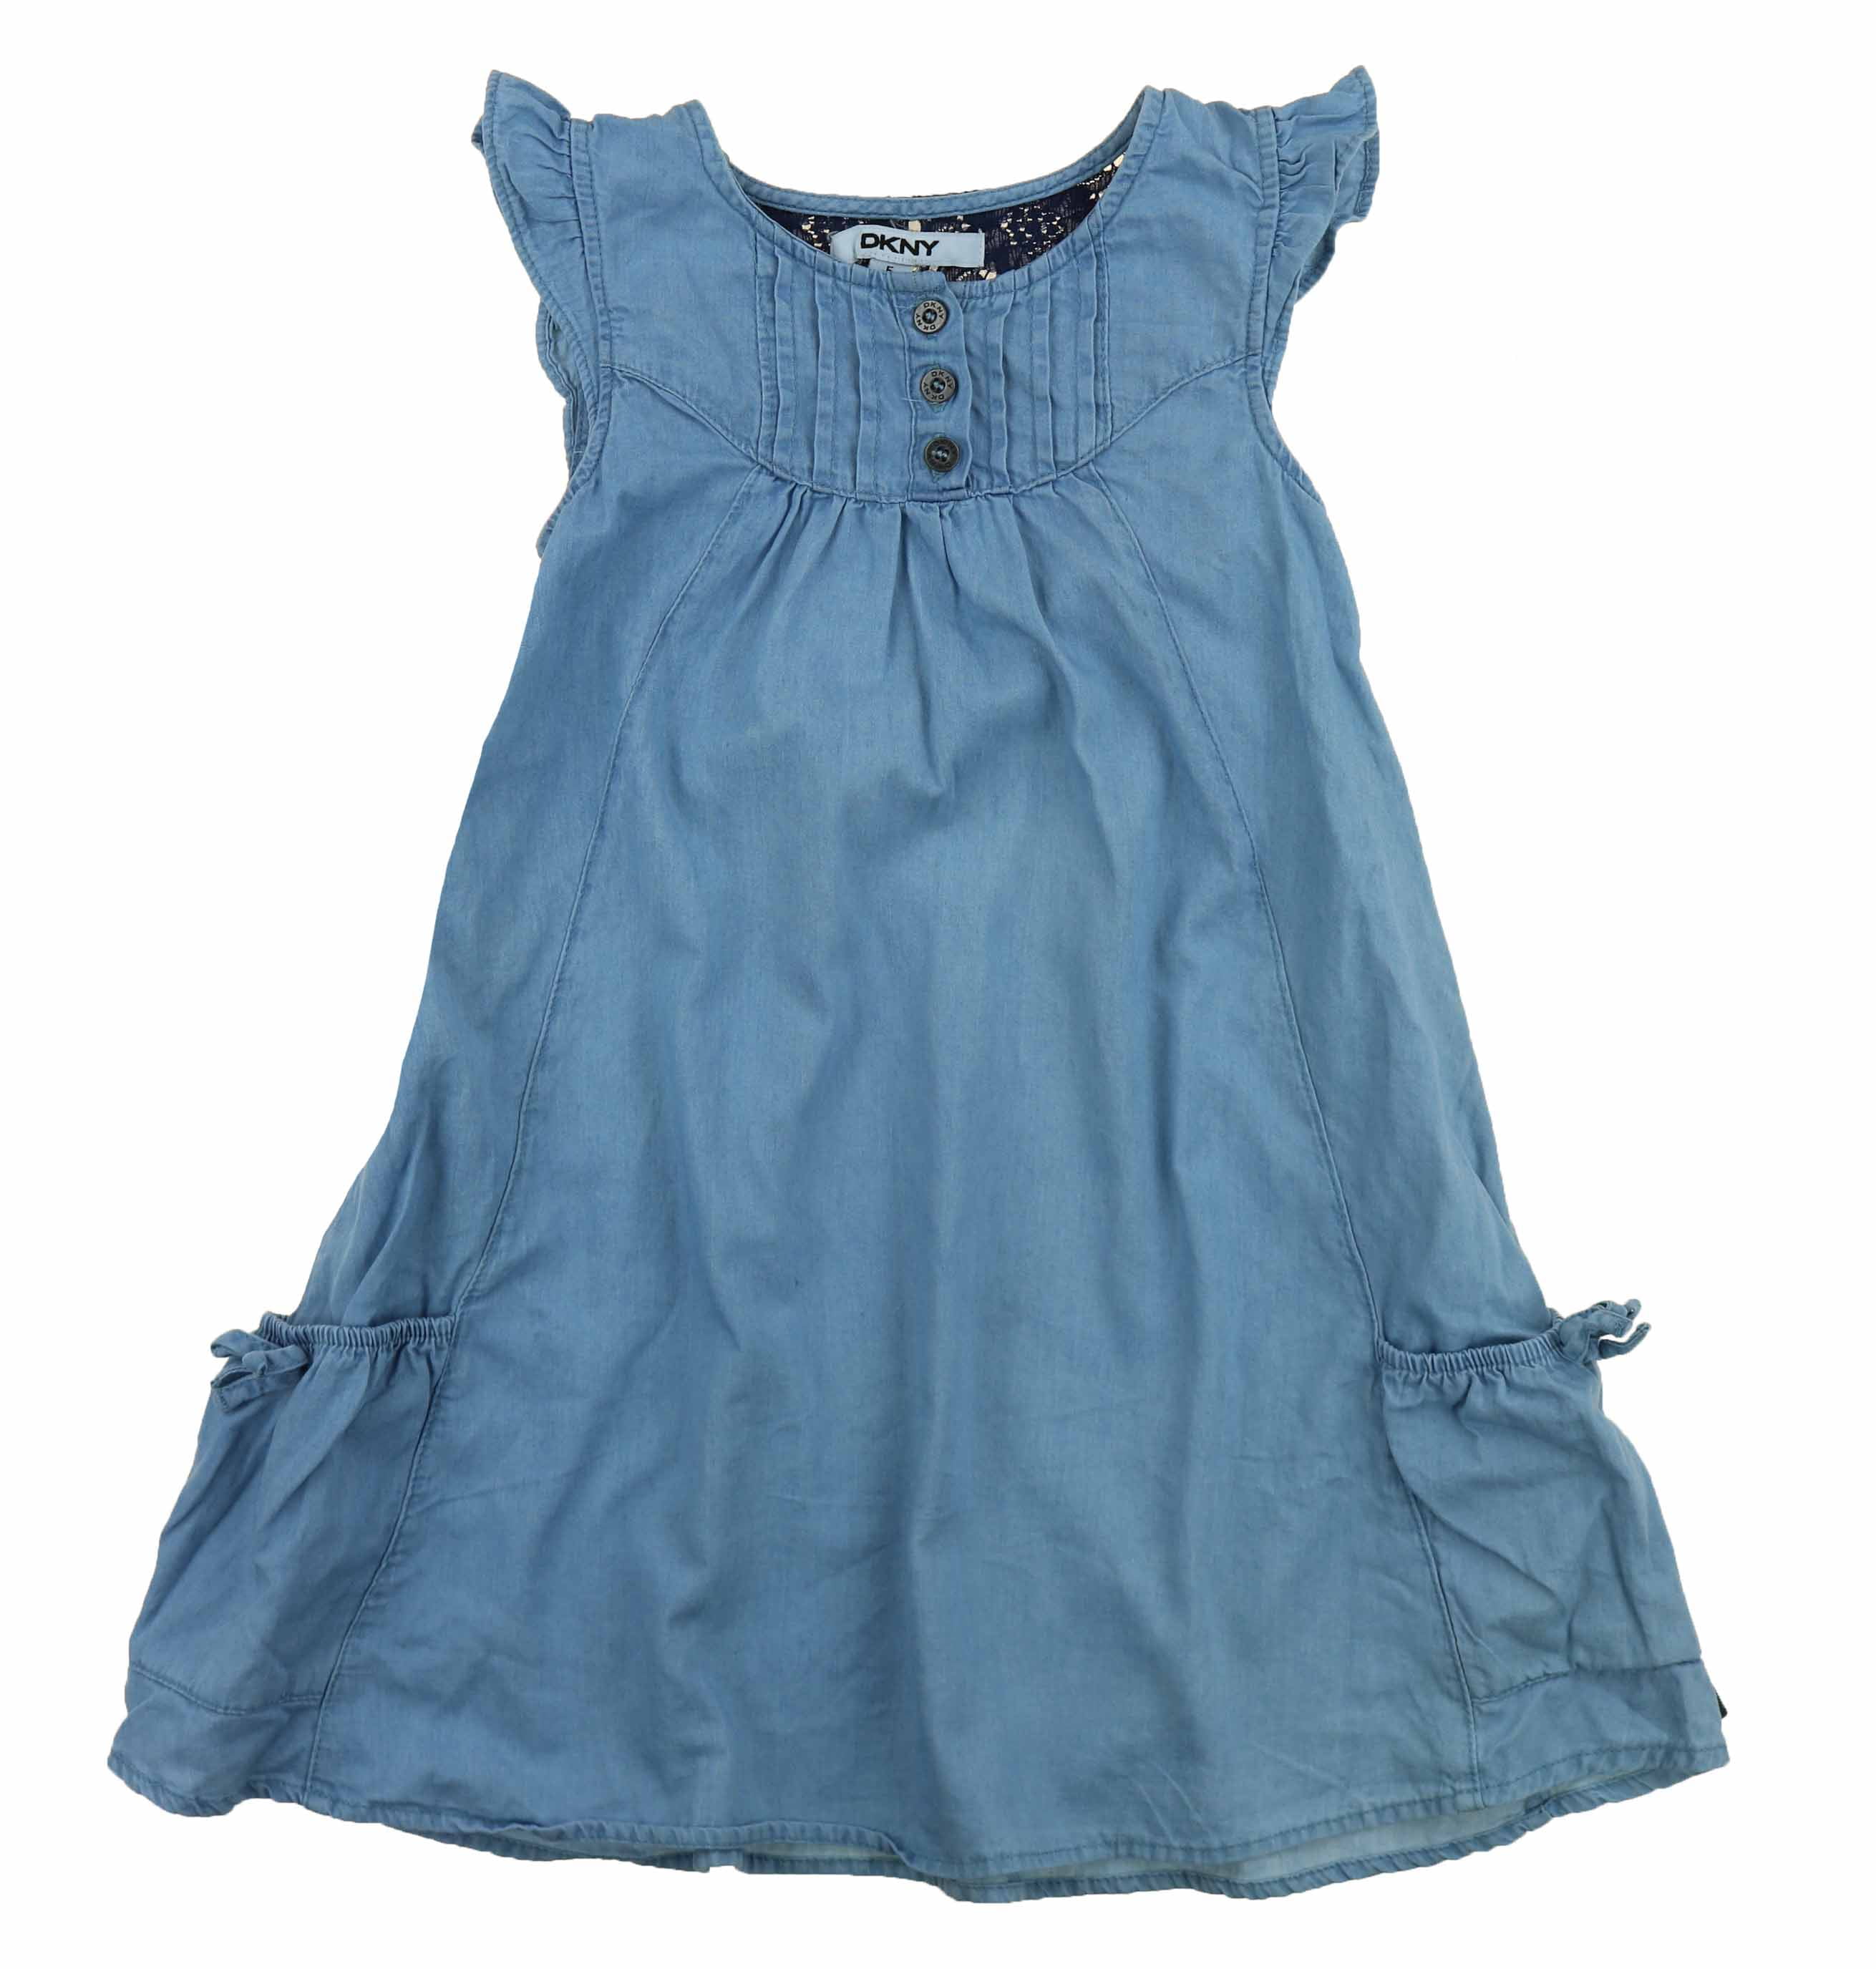 DKNY Girls Denim Dress or Romper (Light Wash Dress, 6) - Walmart.com